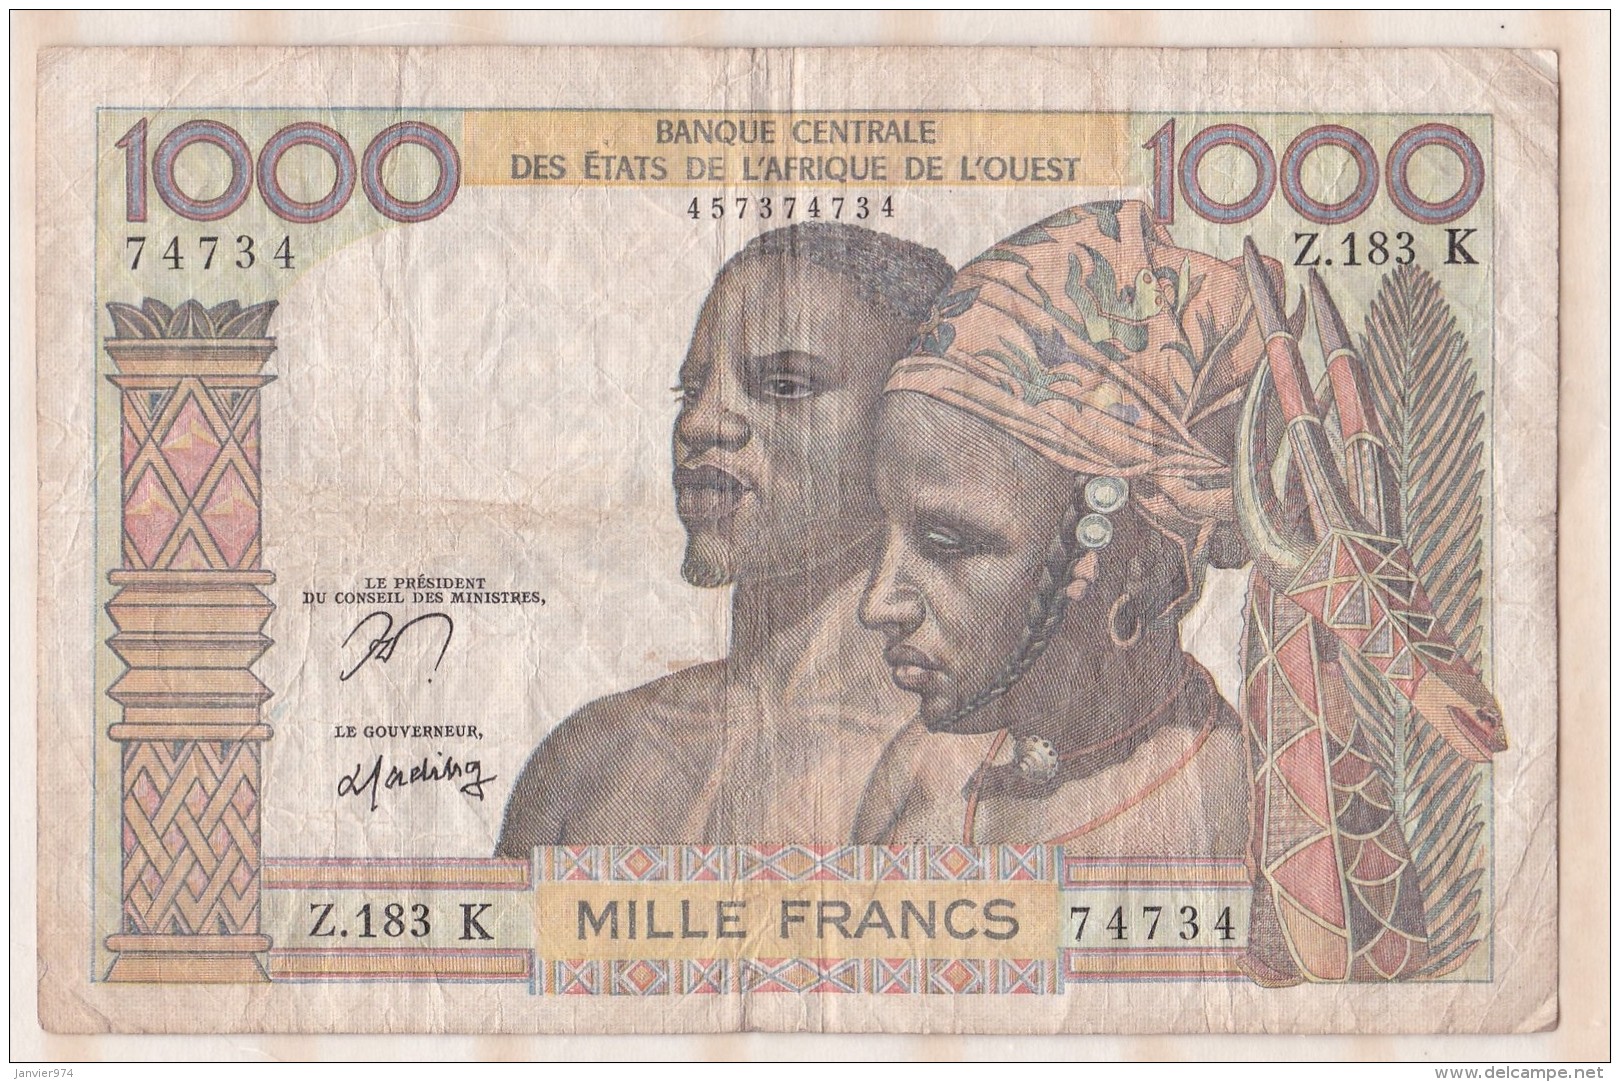 Billet BCEAO  1000 Francs  , Alphabet Z.183 K ,n° 74734 - États D'Afrique De L'Ouest